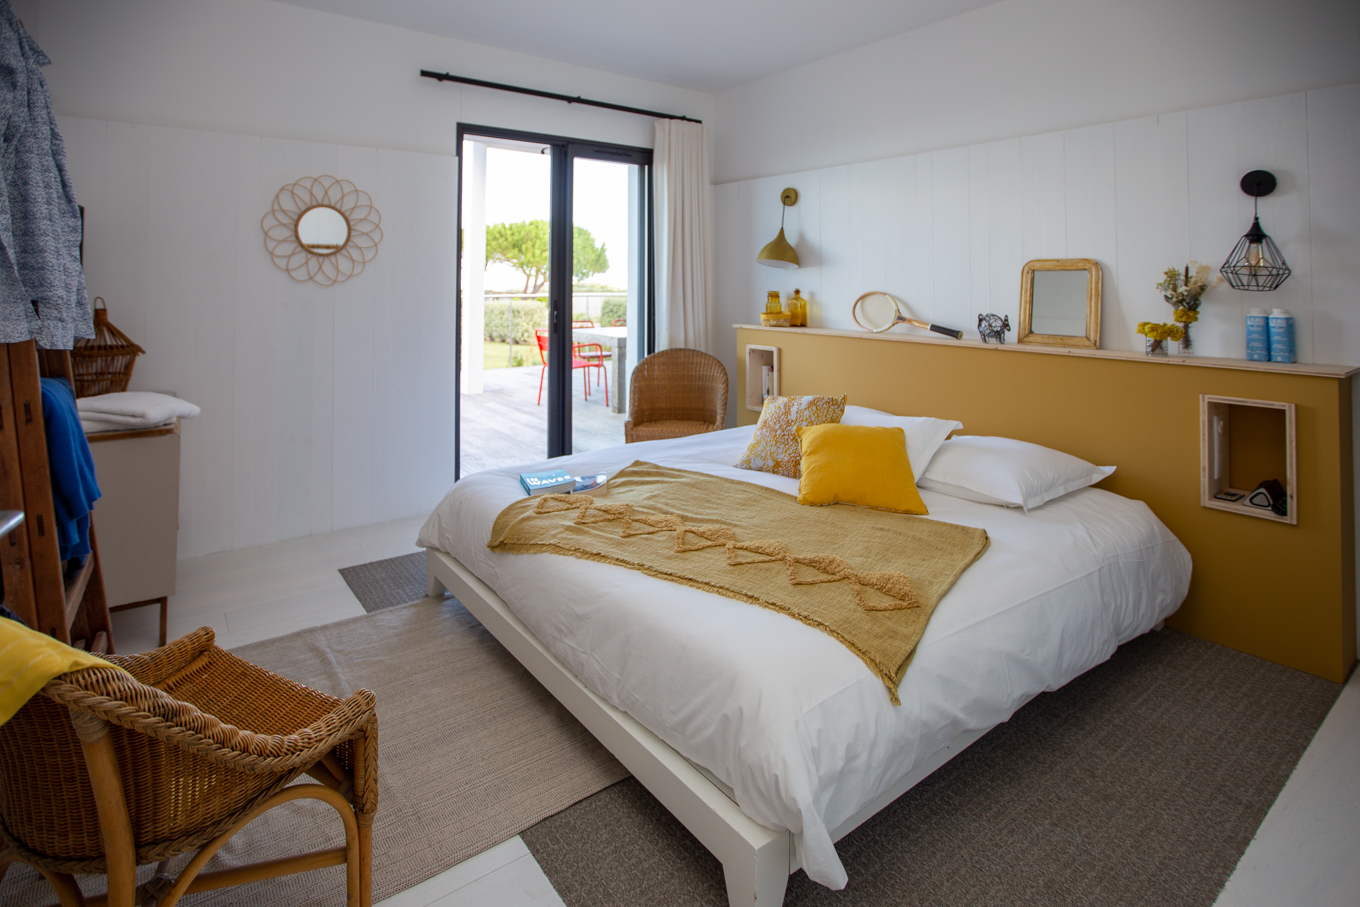 La chambre Immortelle des dunes avec son lit king size, ses tons jaunes et son accès terrasse direct